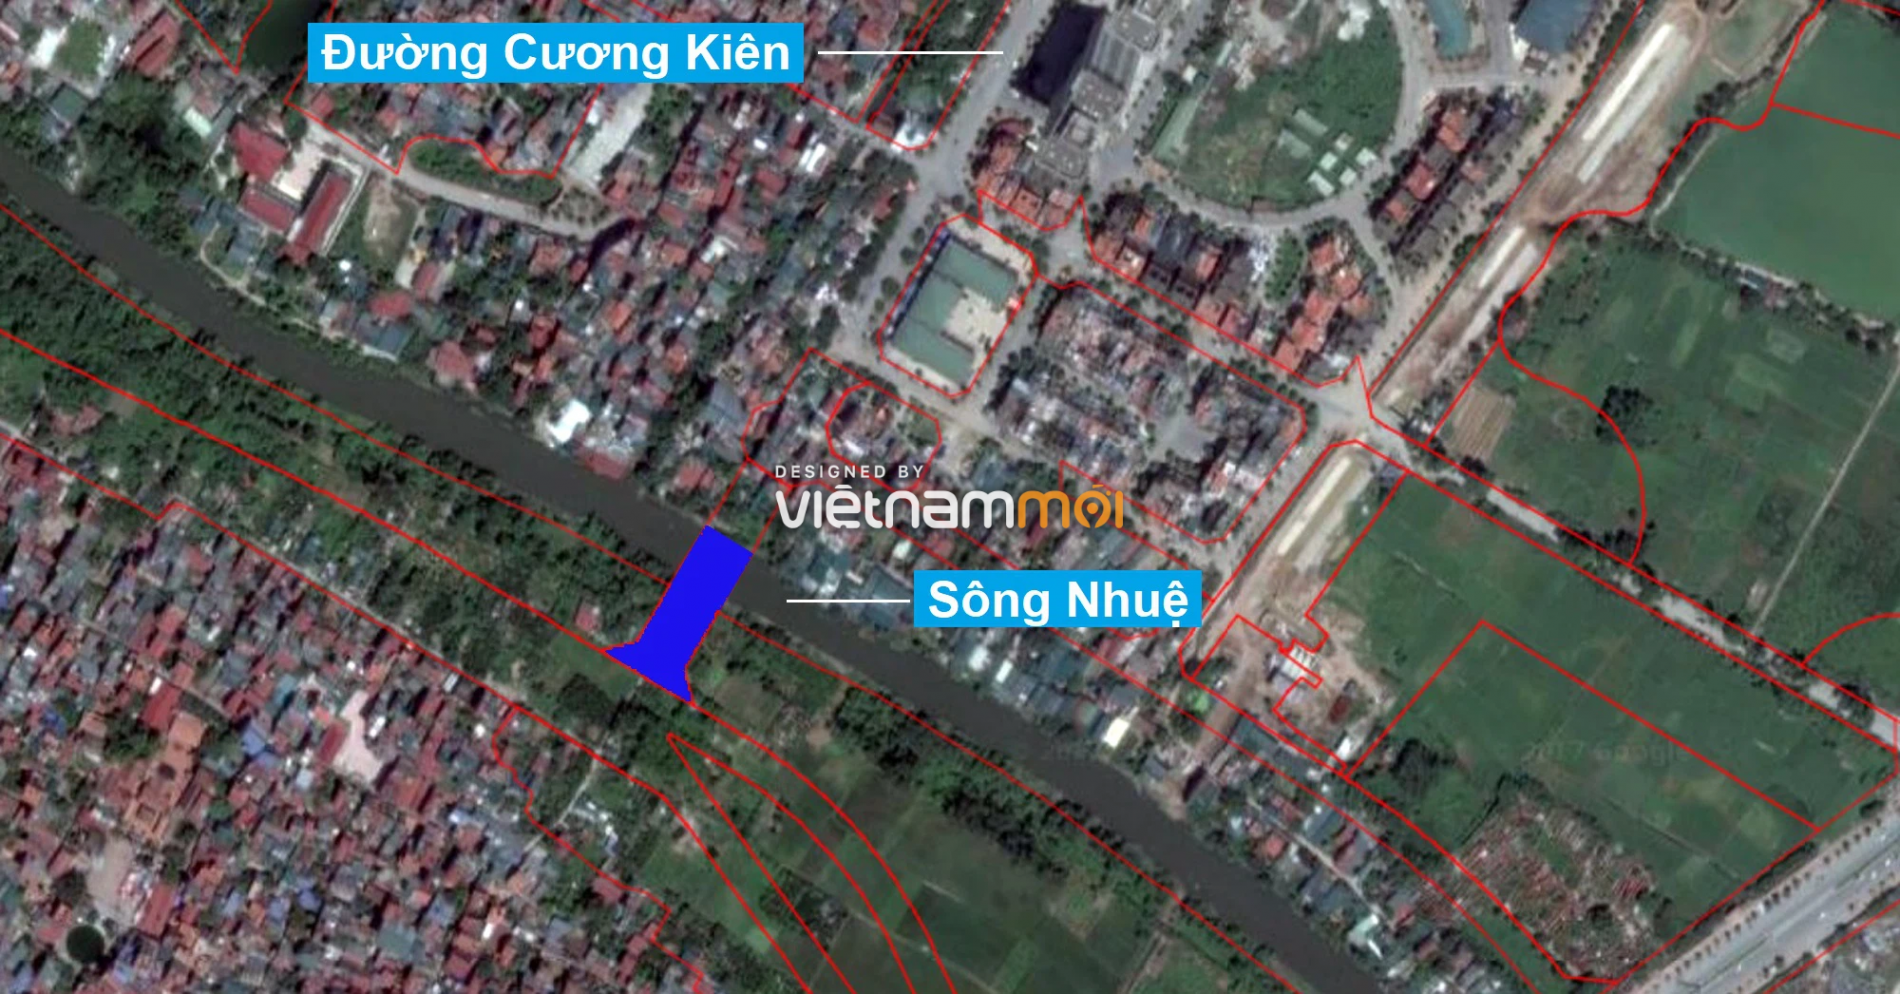 Những khu đất sắp thu hồi để mở đường ở phường Đại Mỗ, Nam Từ Liêm, Hà Nội (phần 2) Chưa xong - Ảnh 9.